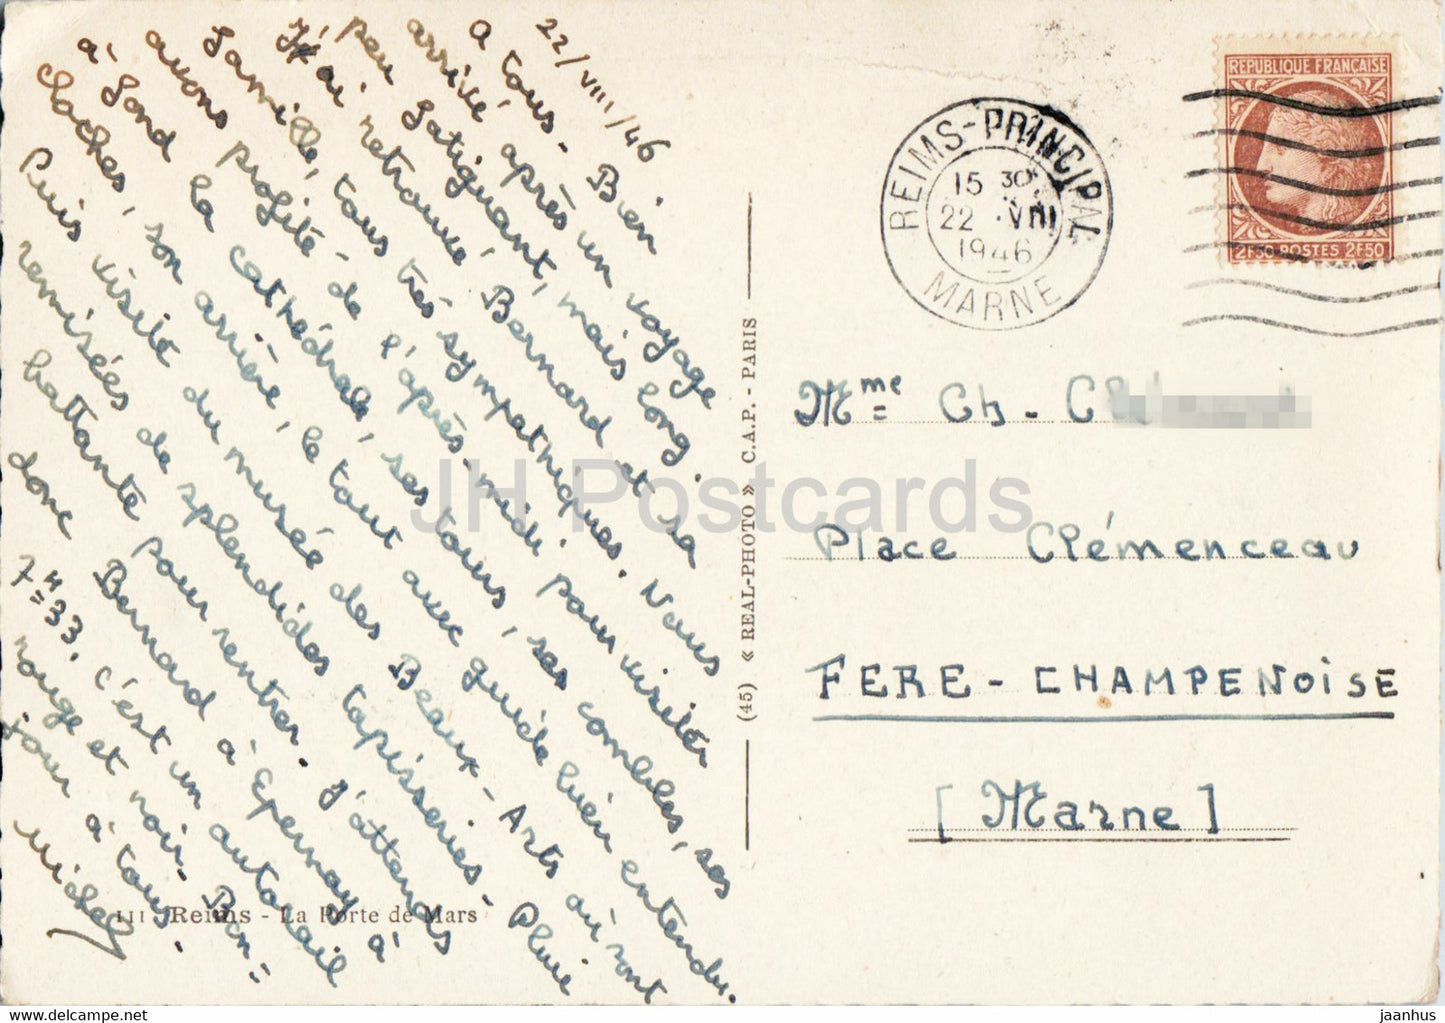 Reims - La Porte de Mars - antike Architektur - alte Postkarte - 1946 - Frankreich - gebraucht